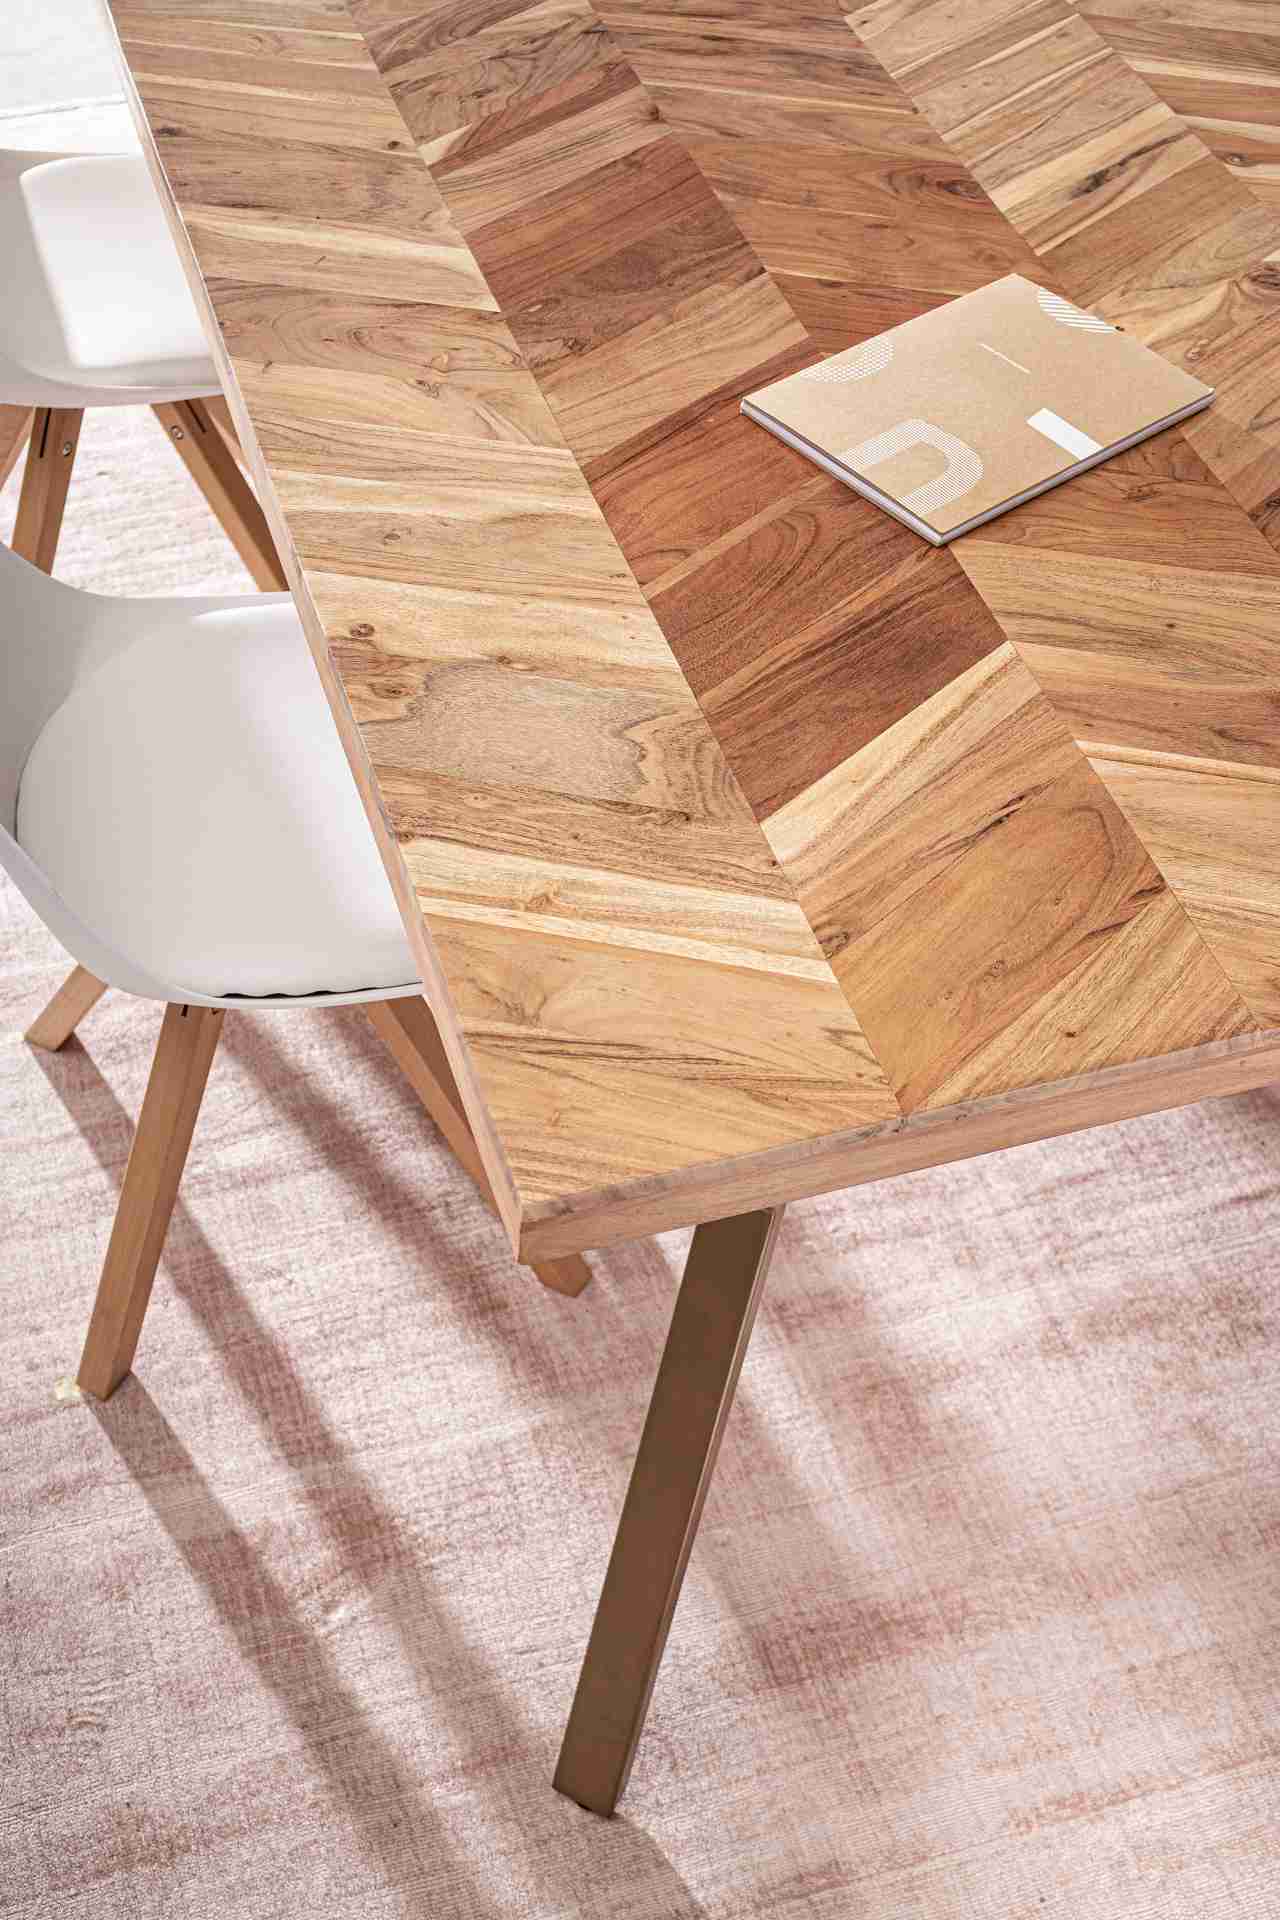 Der Esstisch Raida überzeugt mit seinem moderndem Design. Gefertigt wurde er aus Akazienholz, welches einen natürlichen Farbton besitzt. Das Gestell des Tisches ist aus Metall und ist in eine goldene Farbe. Der Tisch besitzt eine Breite von 220 cm.